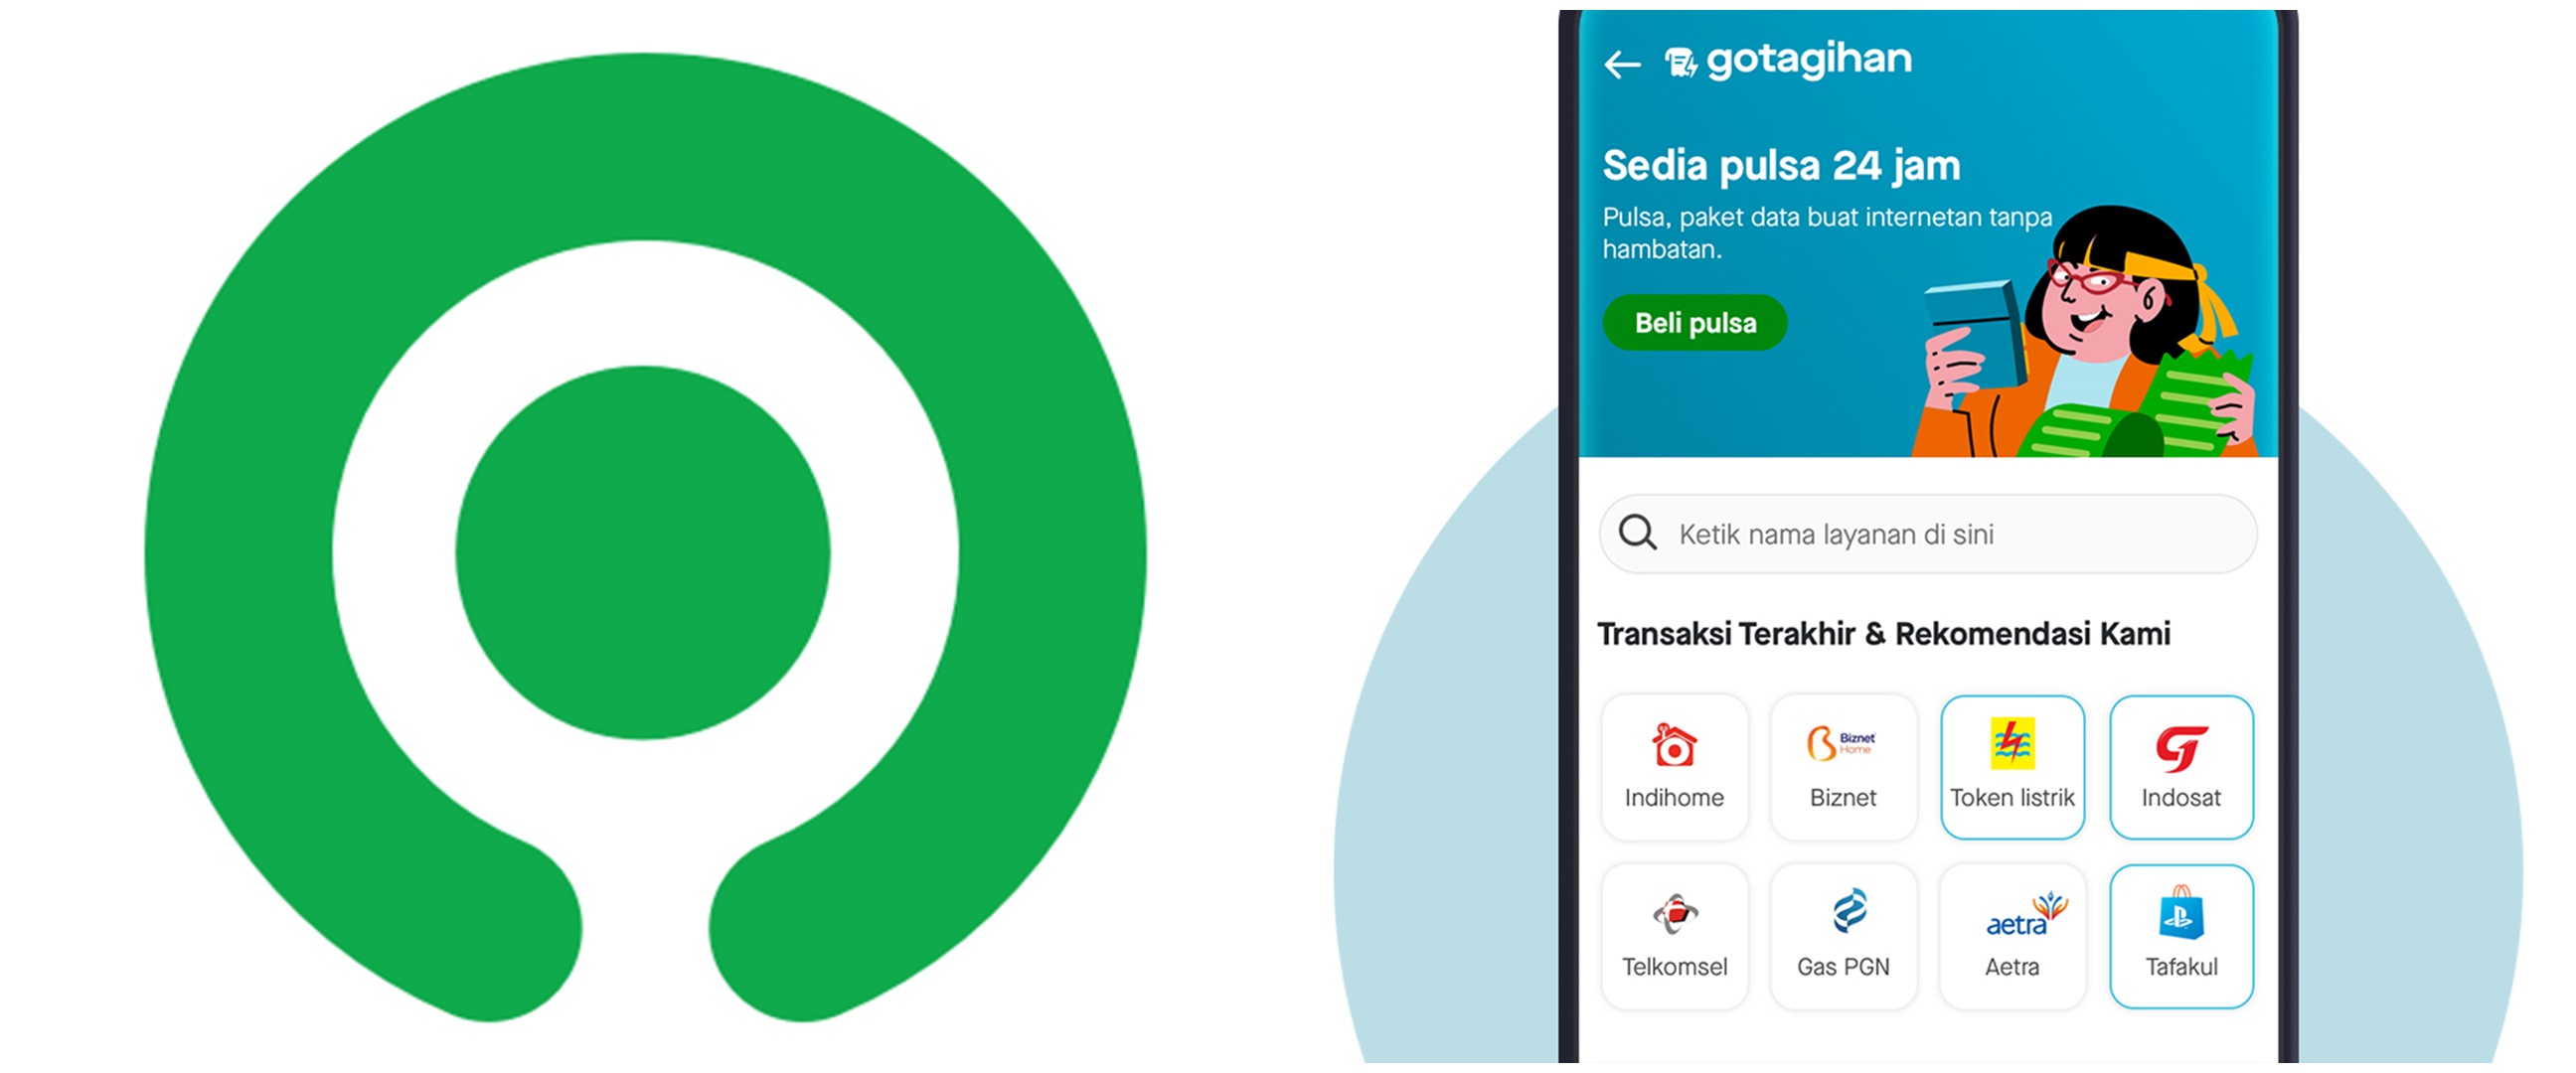 5 Cara bayar tagihan online lewat Gojek, cepat dan praktis